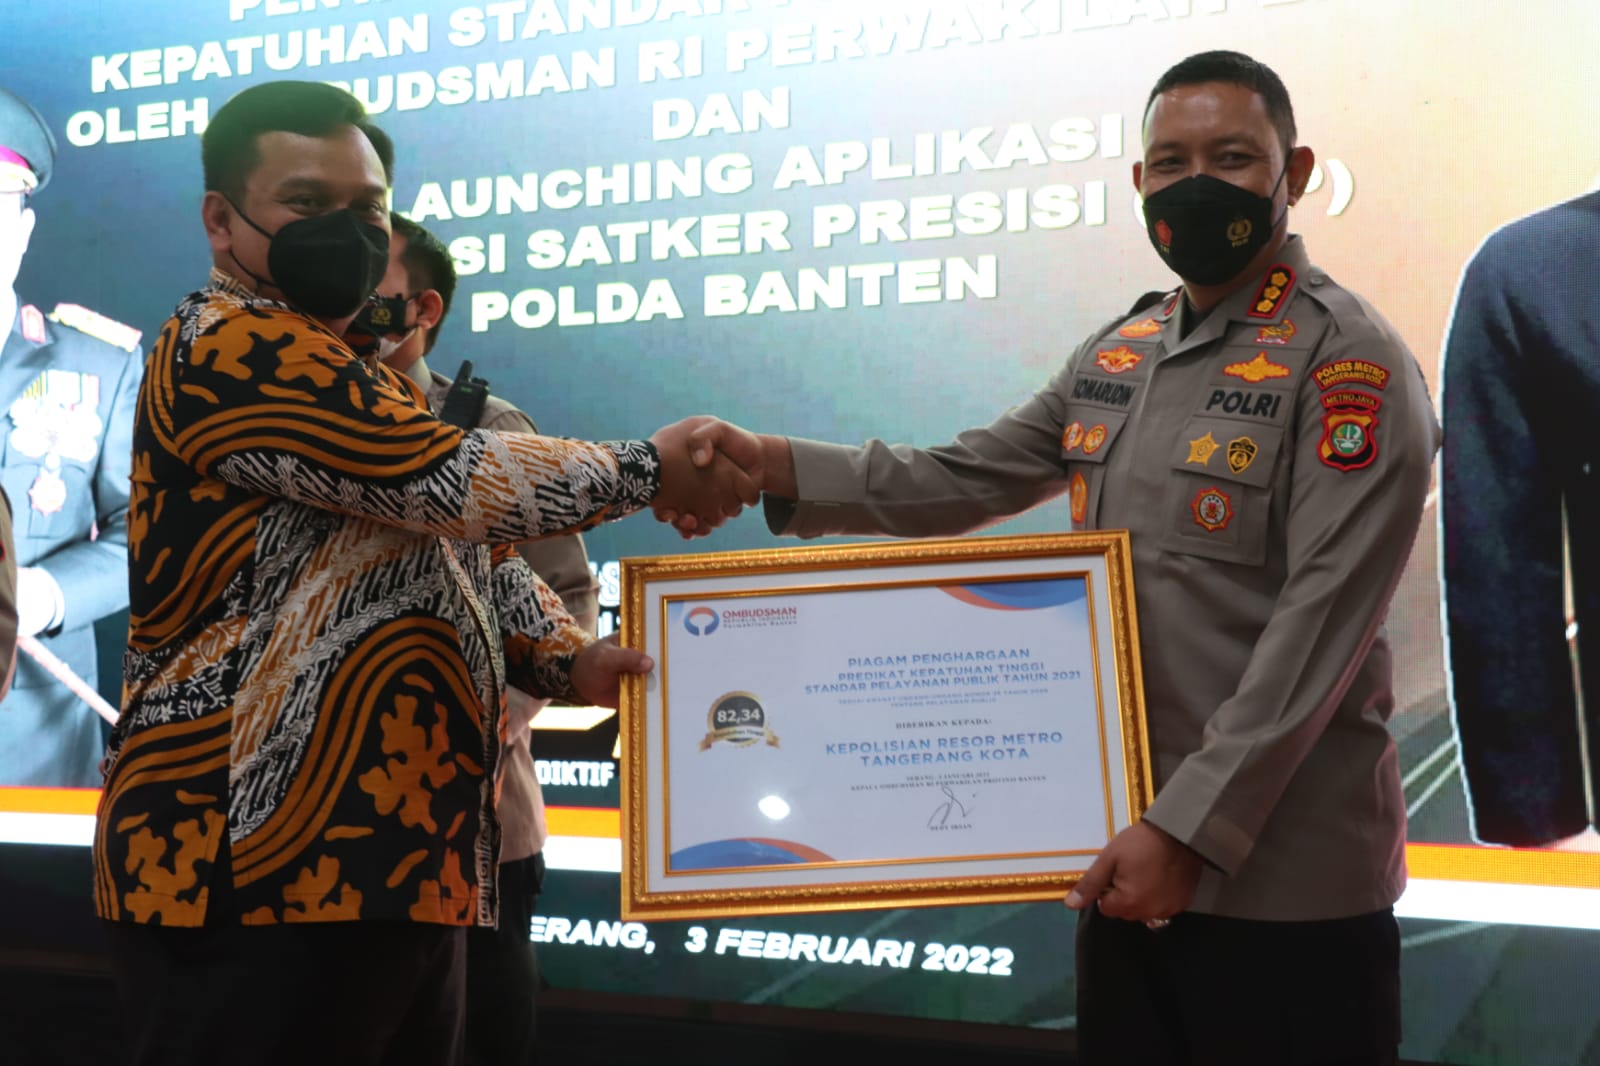 Raih Predikat Zona Hijau Kepatuhan Standar Pelayanan Publik, Polres Metro Tangerang Kota Mendapat Penghargaan dari Ombudsman